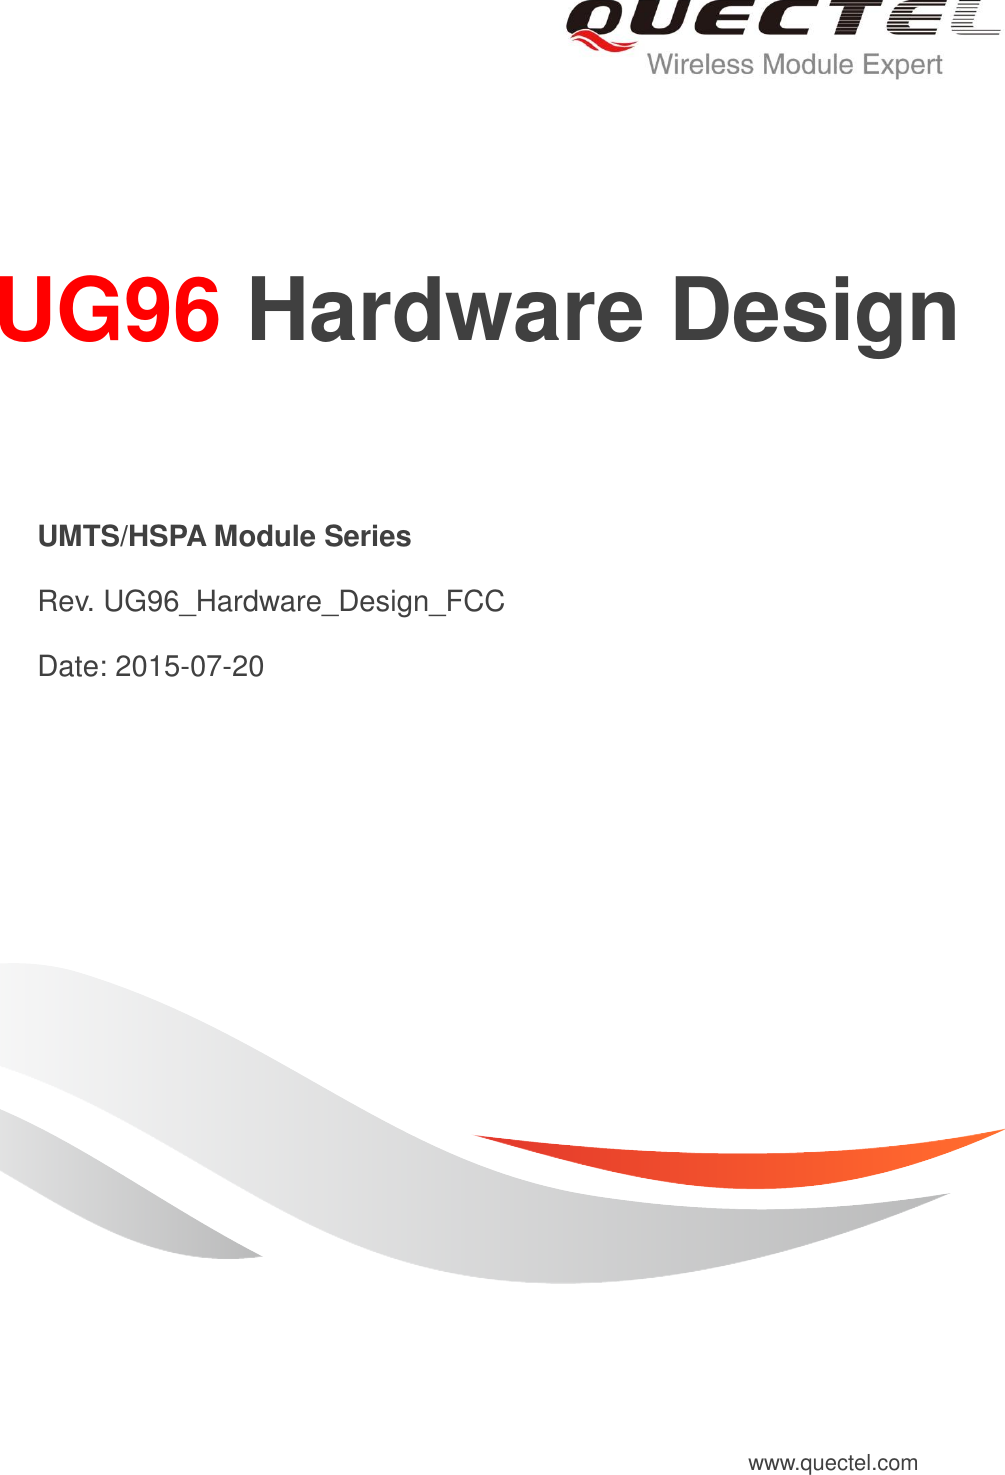     UG96 Hardware Design   UMTS/HSPA Module Series   Rev. UG96_Hardware_Design_FCC   Date: 2015-07-20 www.quectel.com